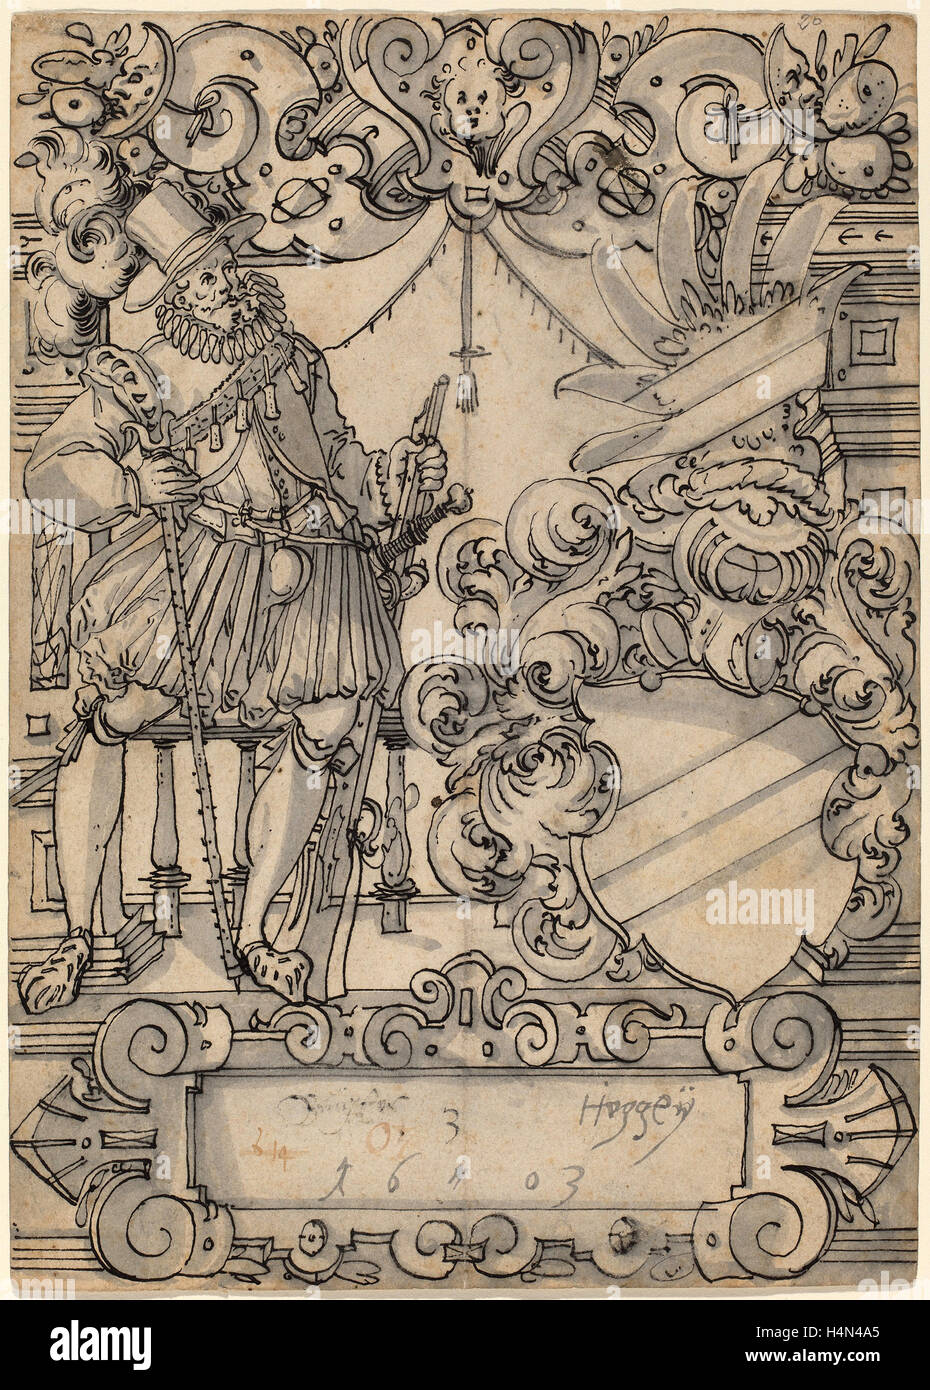 Hans Jegli II (Swiss, 1580 - 1643), A Donor with a Coat of Arms (Schildbegleiter und Wappenschild mit Schrägbalken), 1603 Stock Photo